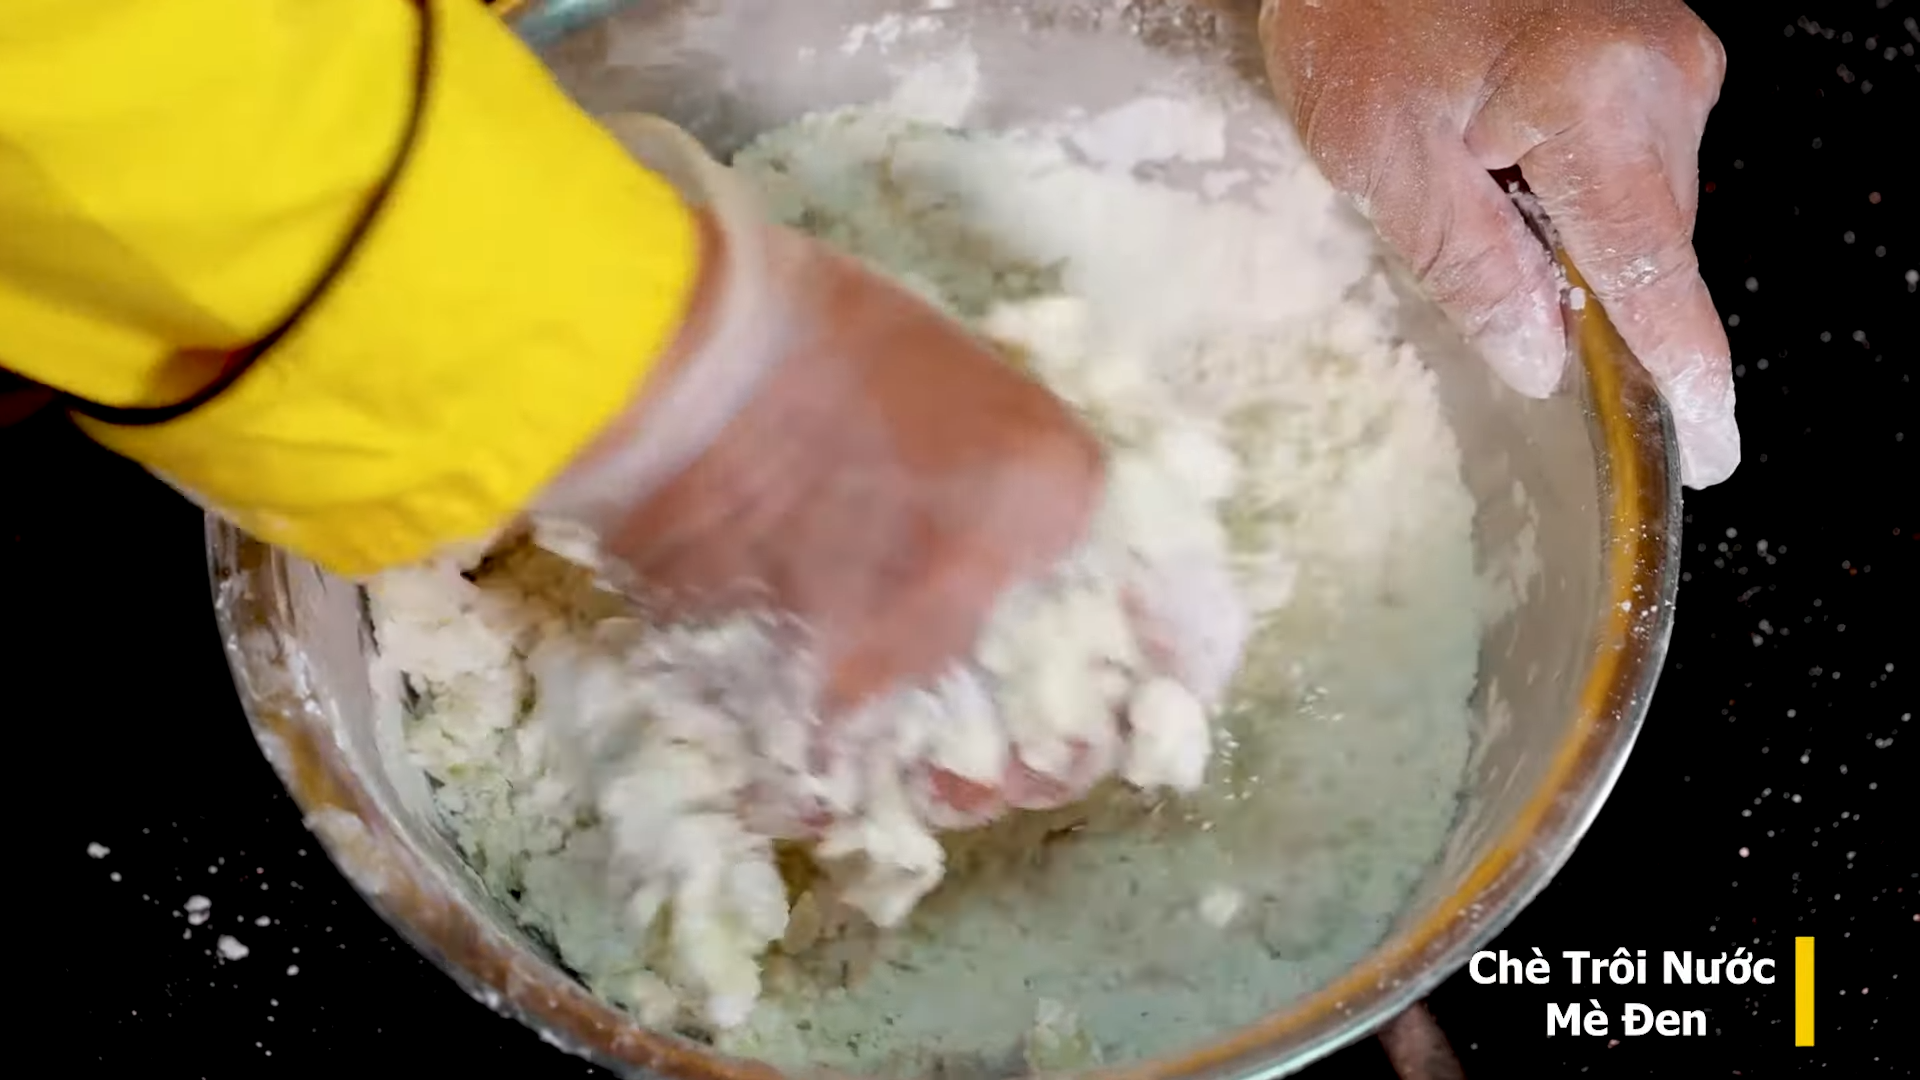 Cách nấu Chè Trôi Nước Khổ Qua Mè Đen mềm dẻo - không bị cứng kiểu Hoa